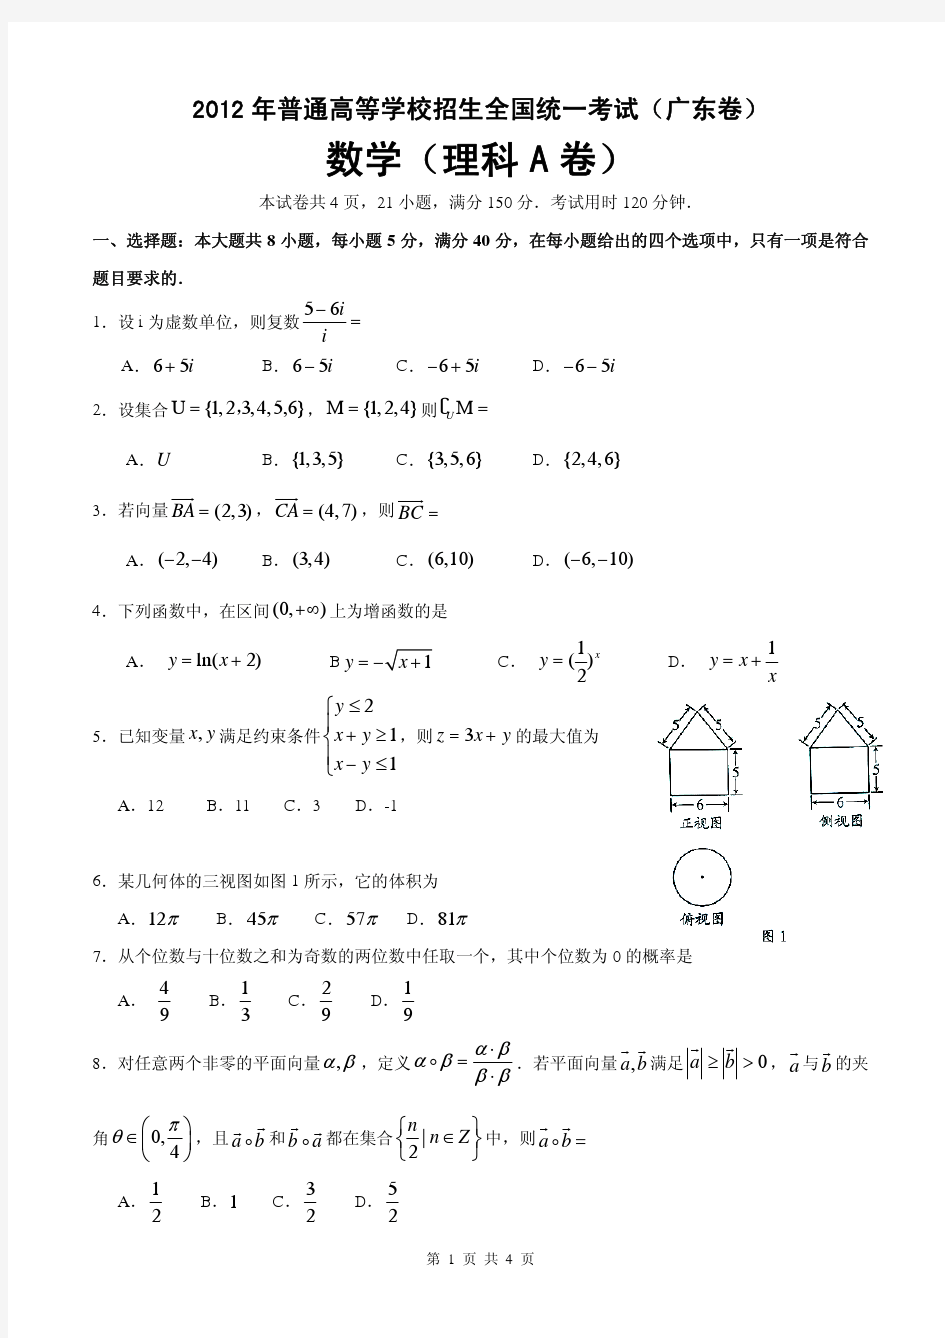 2012年广东高考理科数学卷(试题和答案)